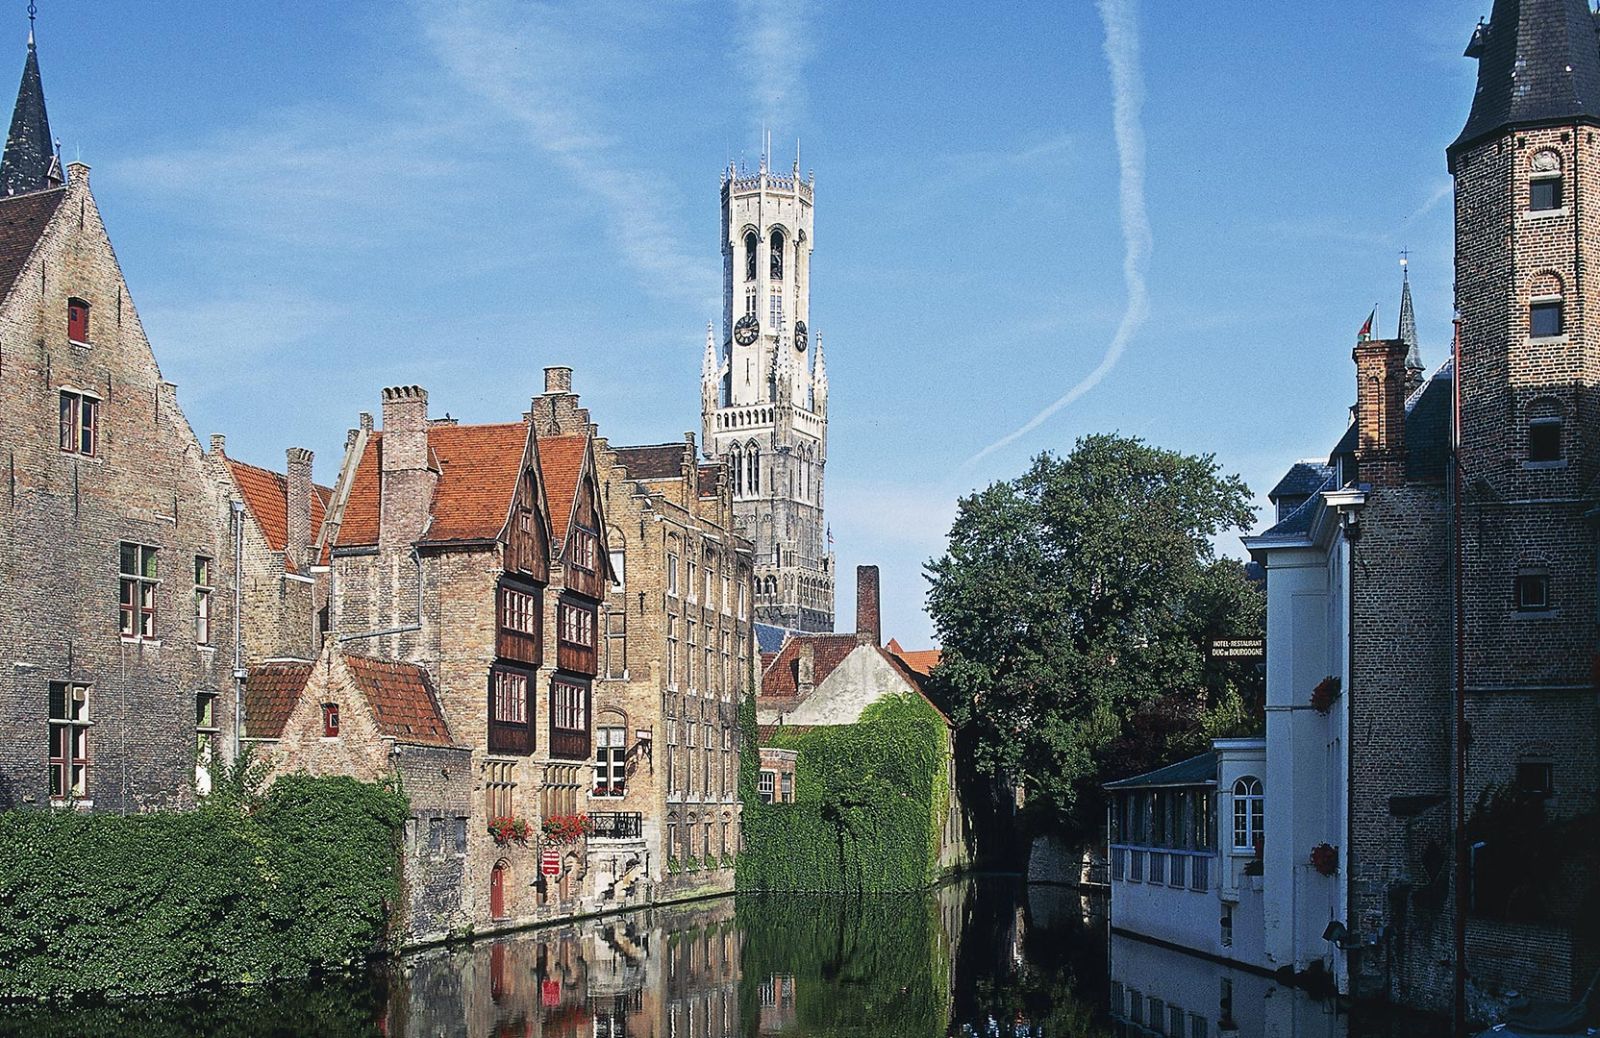 Andare a Bruges è come entrare in una fiaba